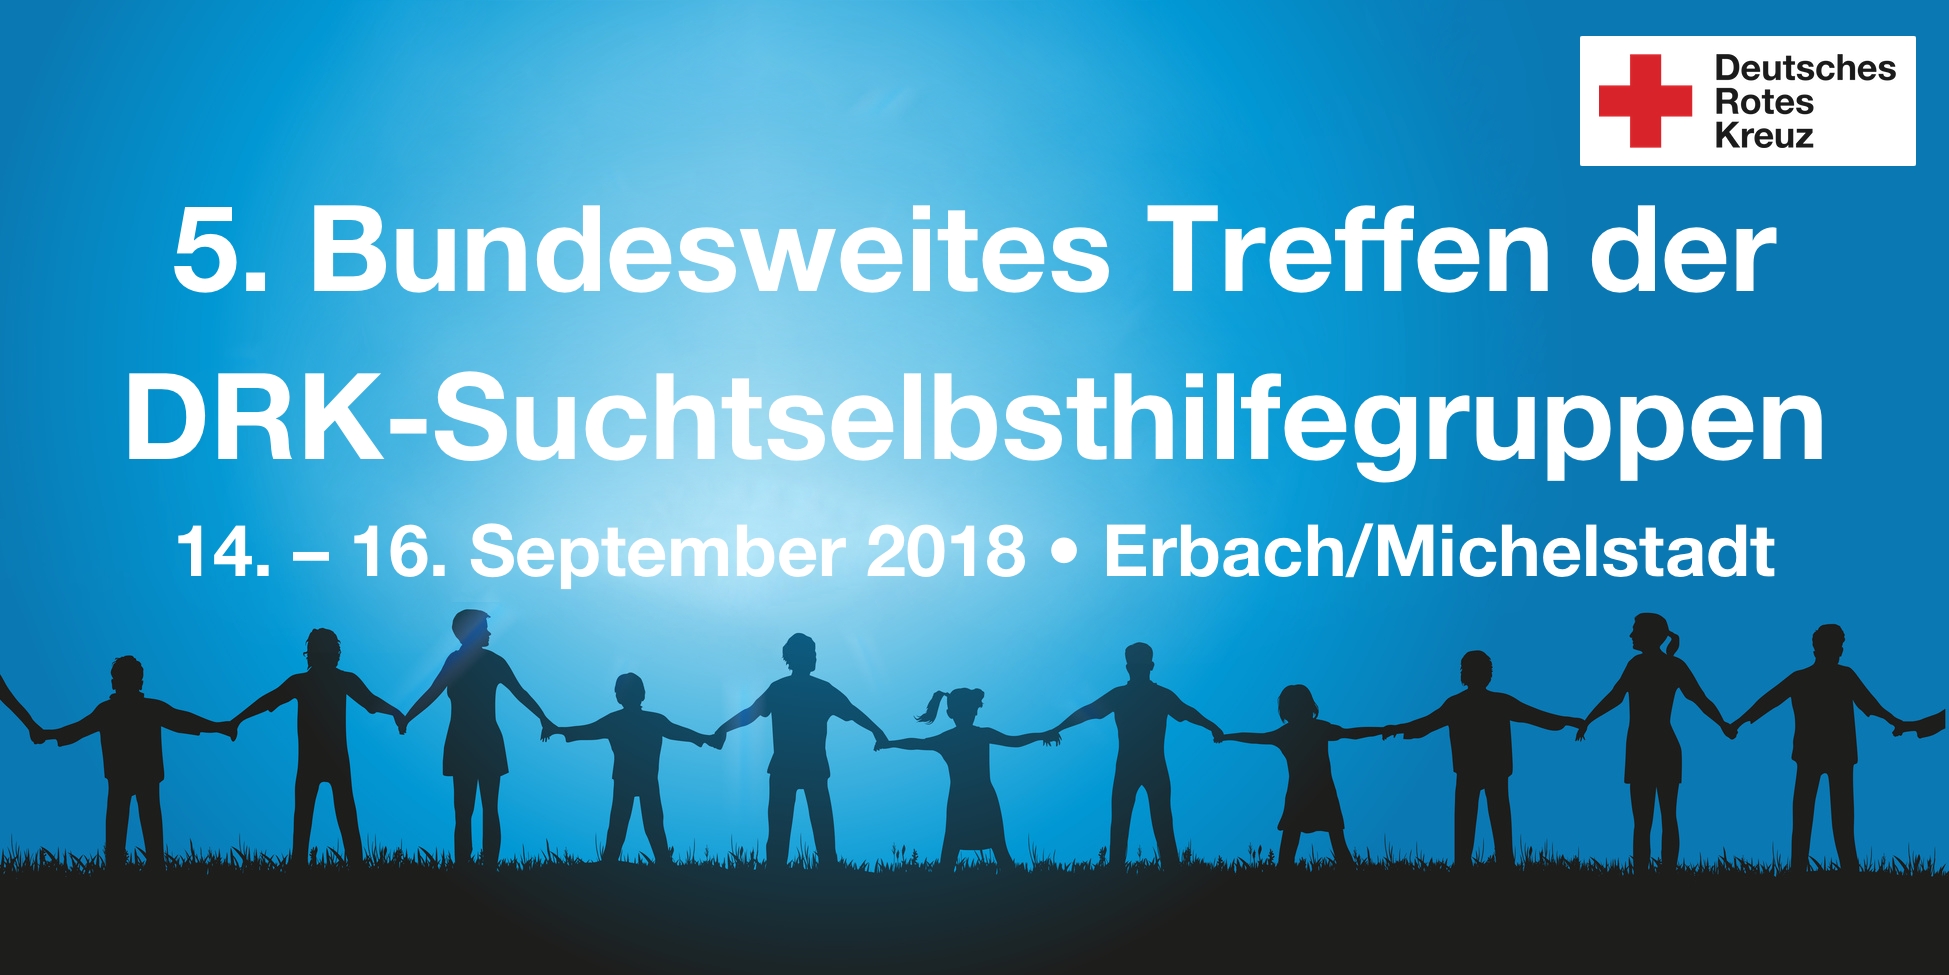 Banner des 5. Bundesweiten Treffens der DRK-Suchtselbsthilfegruppen vom 14. – 16. September 2018